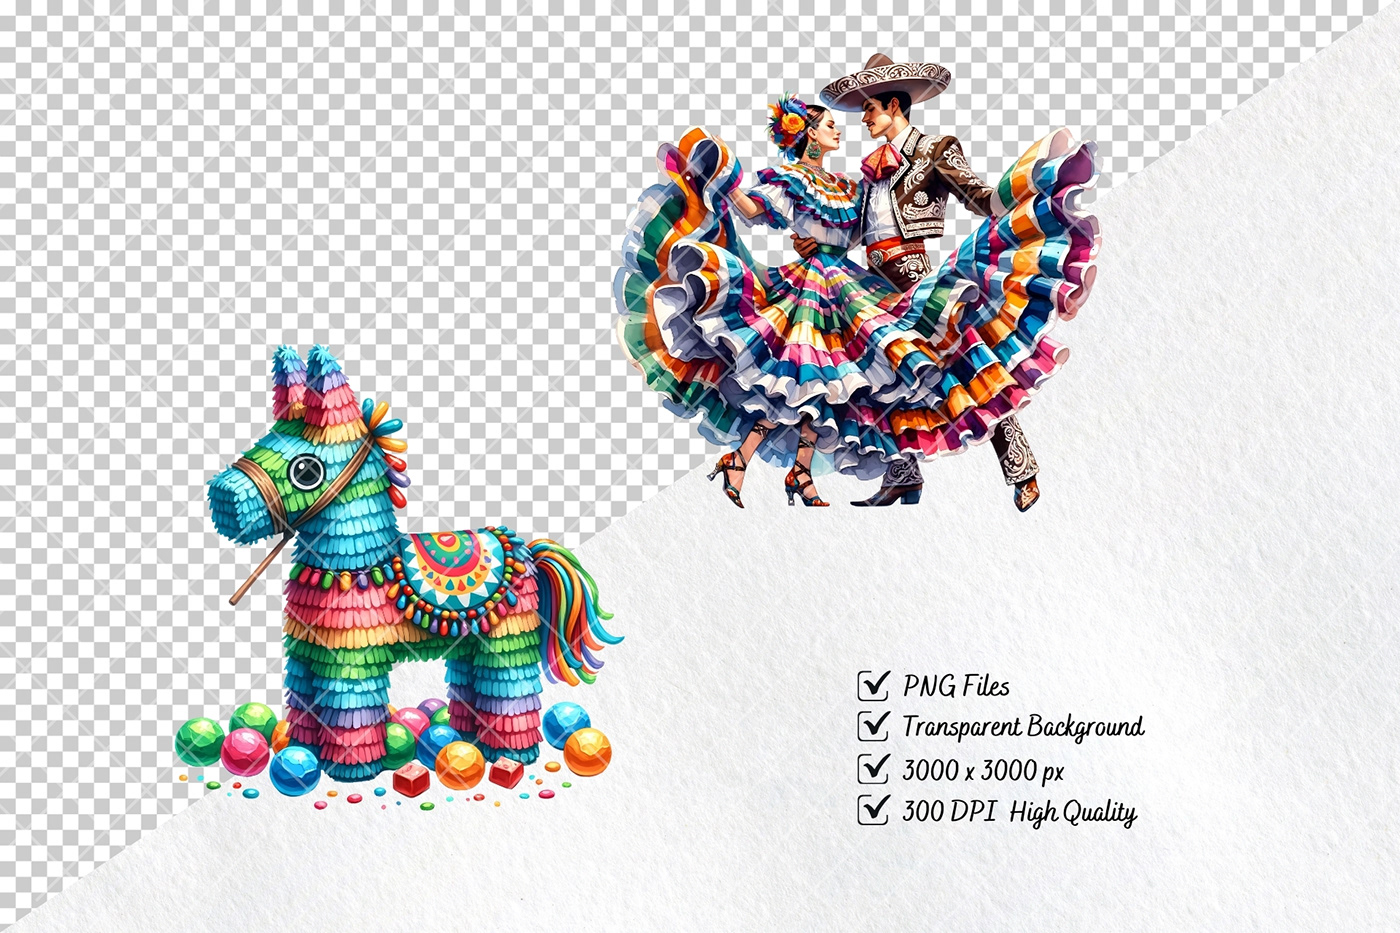 cinco de mayo mexico Mexican clipart watercolor illustration Mexican Food Tacos fiesta cactus sombrero